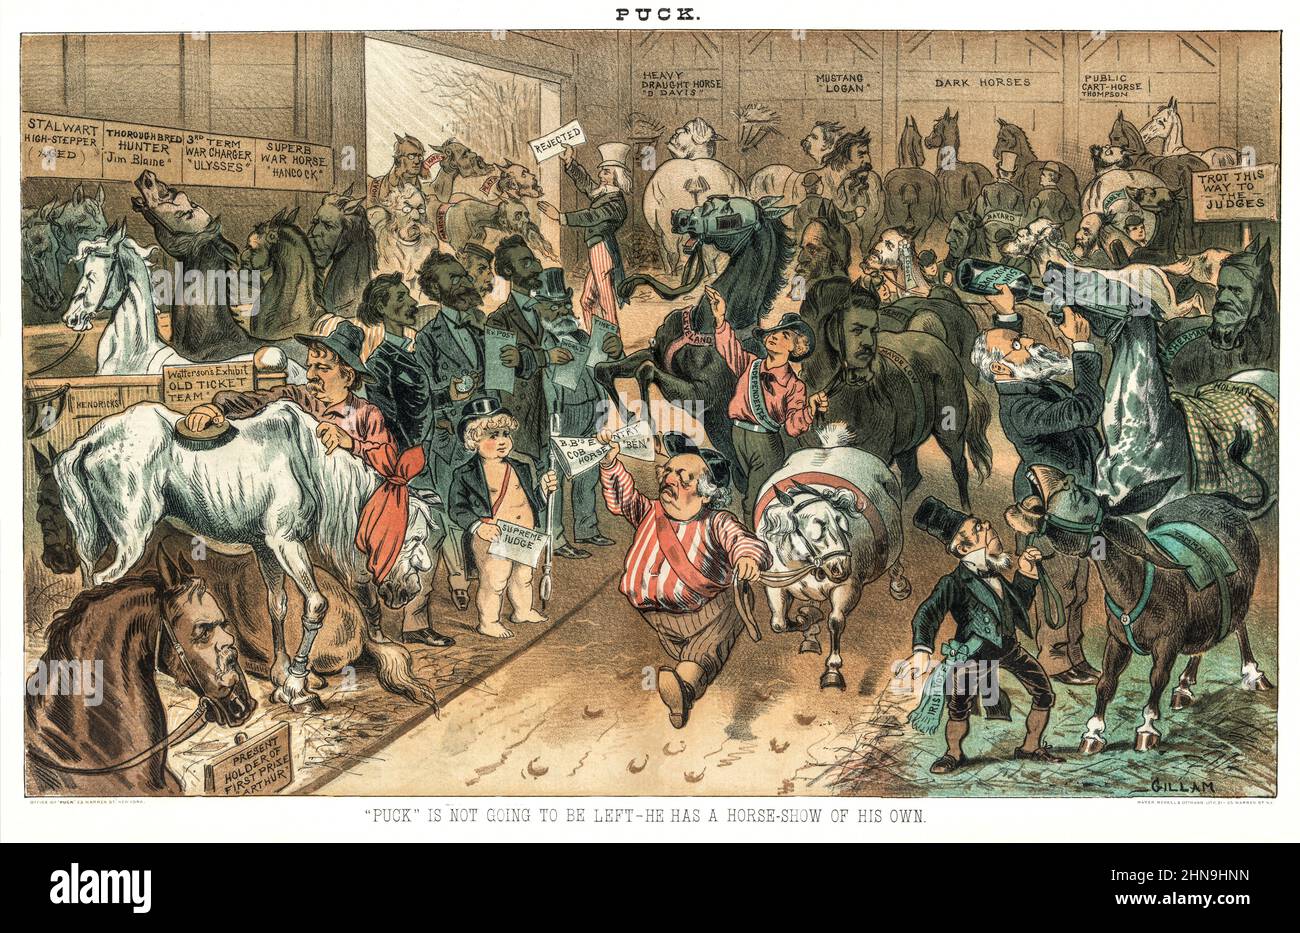 Eine Illustration des American Puck Magazine aus dem späten 19th. Jahrhundert, die das Innere einer Scheune zeigt, die von Pferden überfüllt ist und noch mehr versucht, hereinzukommen. Auf der Rückseite befinden sich republikanische Politiker mit Onkel Sam, die ein „abgelehnter“ Schild an der Tür halten. Im Zentrum steht Benjamin F. Butler, der ein Pferd führt, das wie er selbst aussieht, gefolgt von Pucks „Independent“-Parteifigur, die zwei Pferde führt, die als „Cleveland“ und „Mayor Low“ identifiziert wurden. Puck hält einen Lithographenstift und ein Schild mit der Aufschrift „Supreme Judge“ und steht mit den Zeitungsredakteuren Whitelaw Reid, Carl Schurz, James Gordon Bennett, Joseph Pulitzer und Murat zusammen Stockfoto